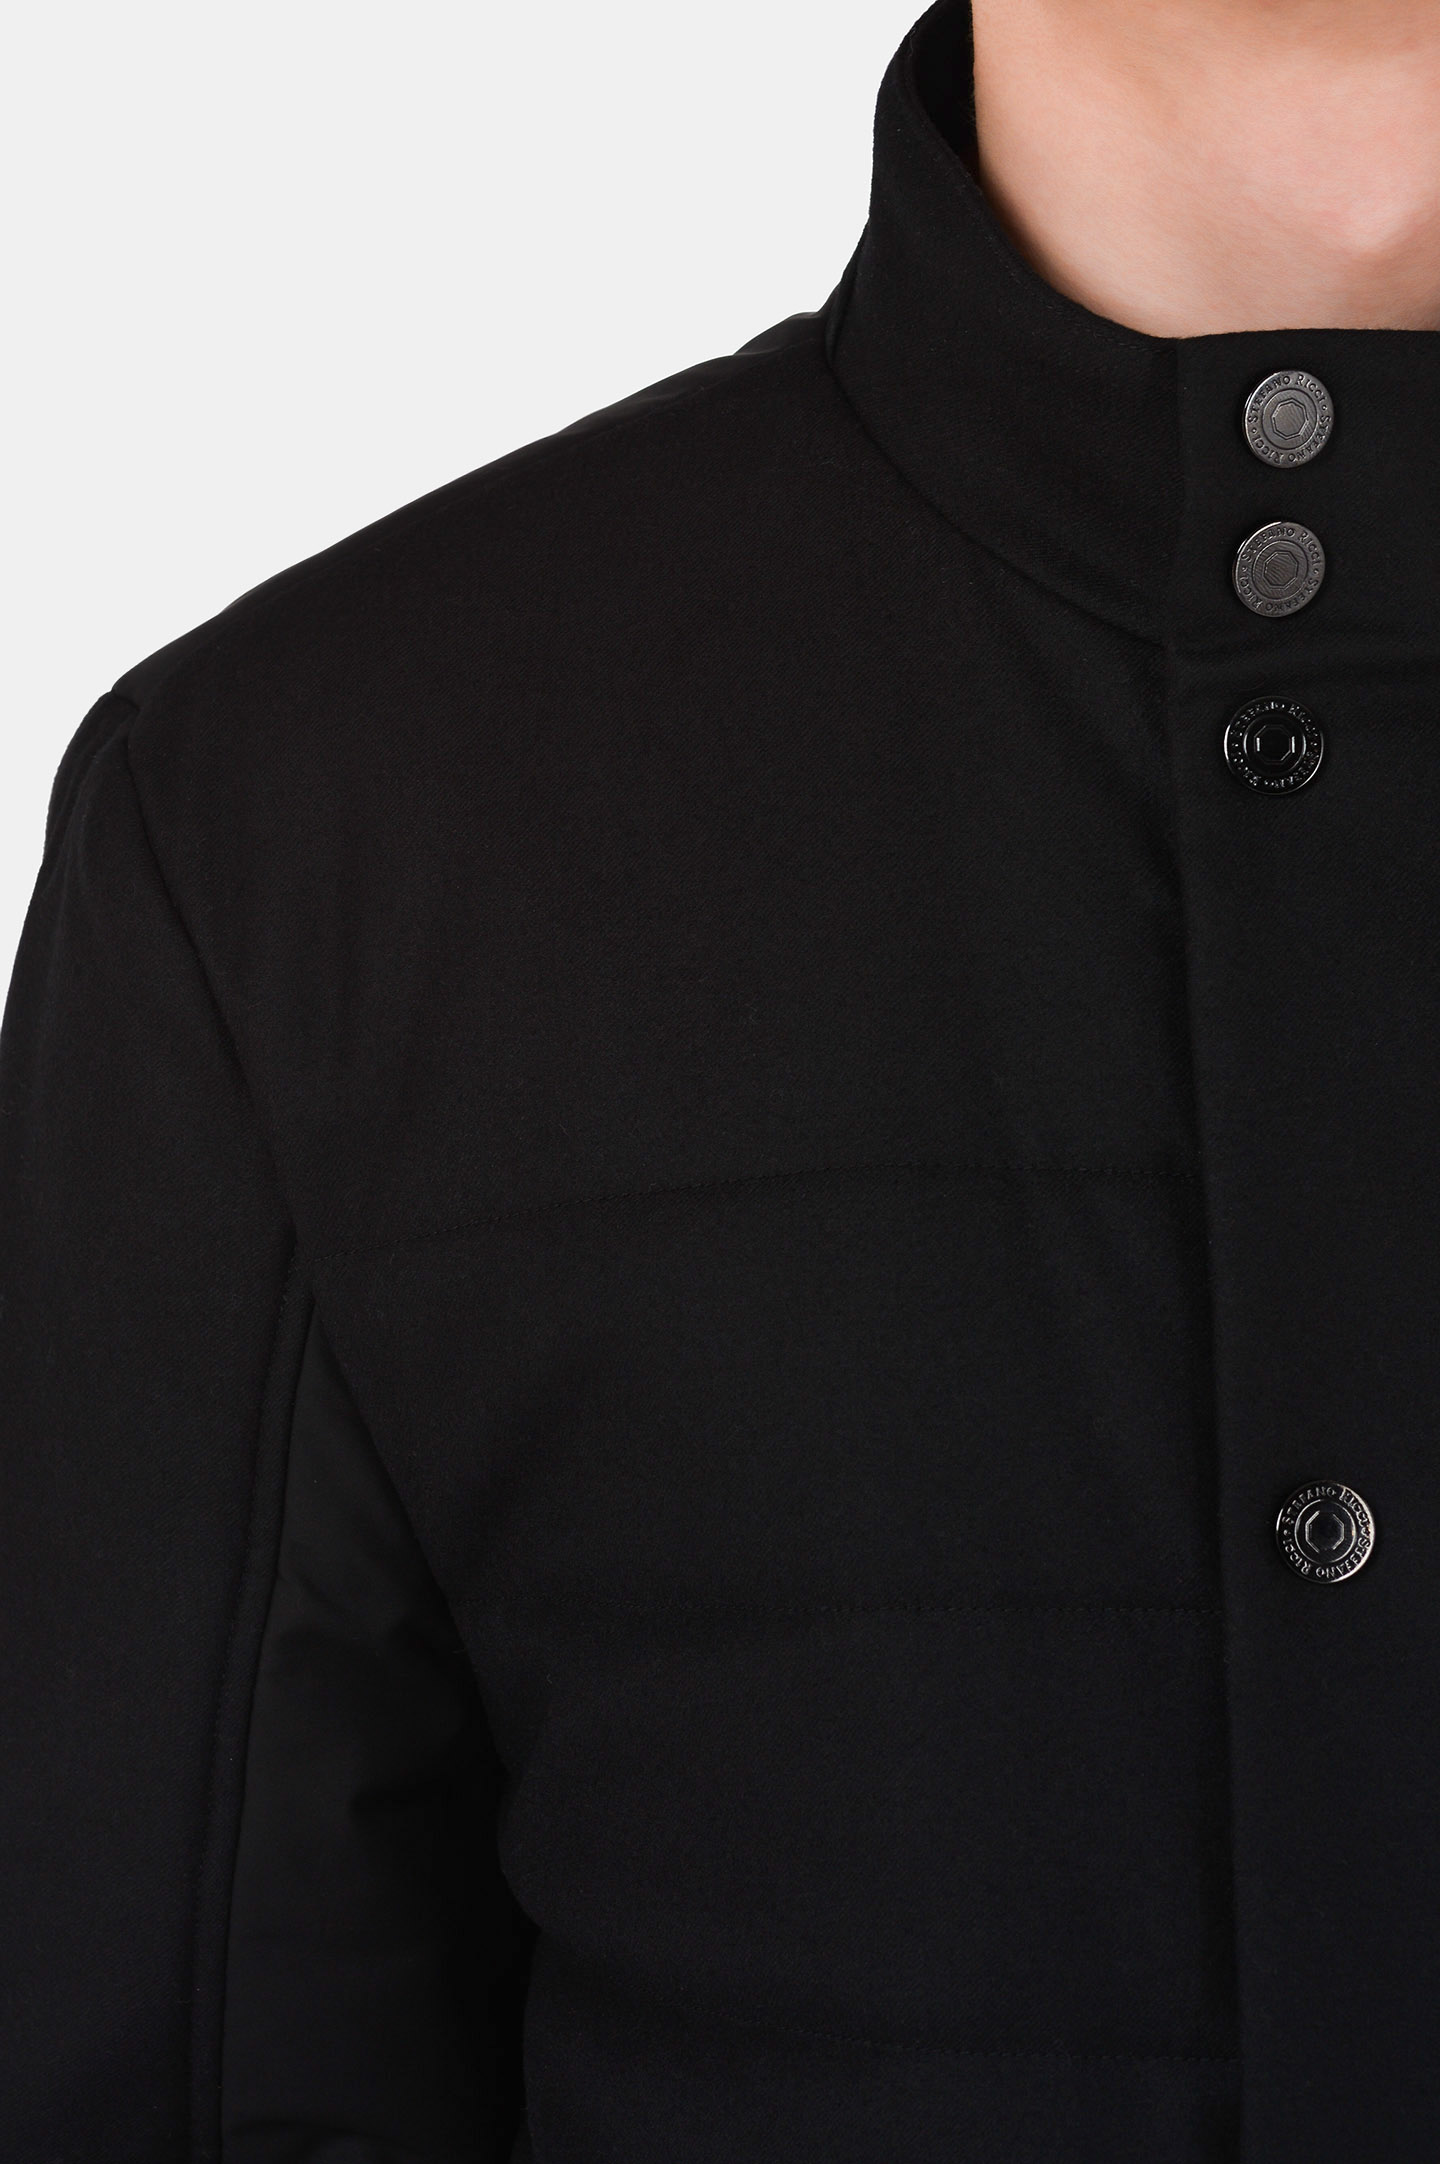 Куртка STEFANO RICCI MDJ0300110 WC002G, цвет: Черный, Мужской